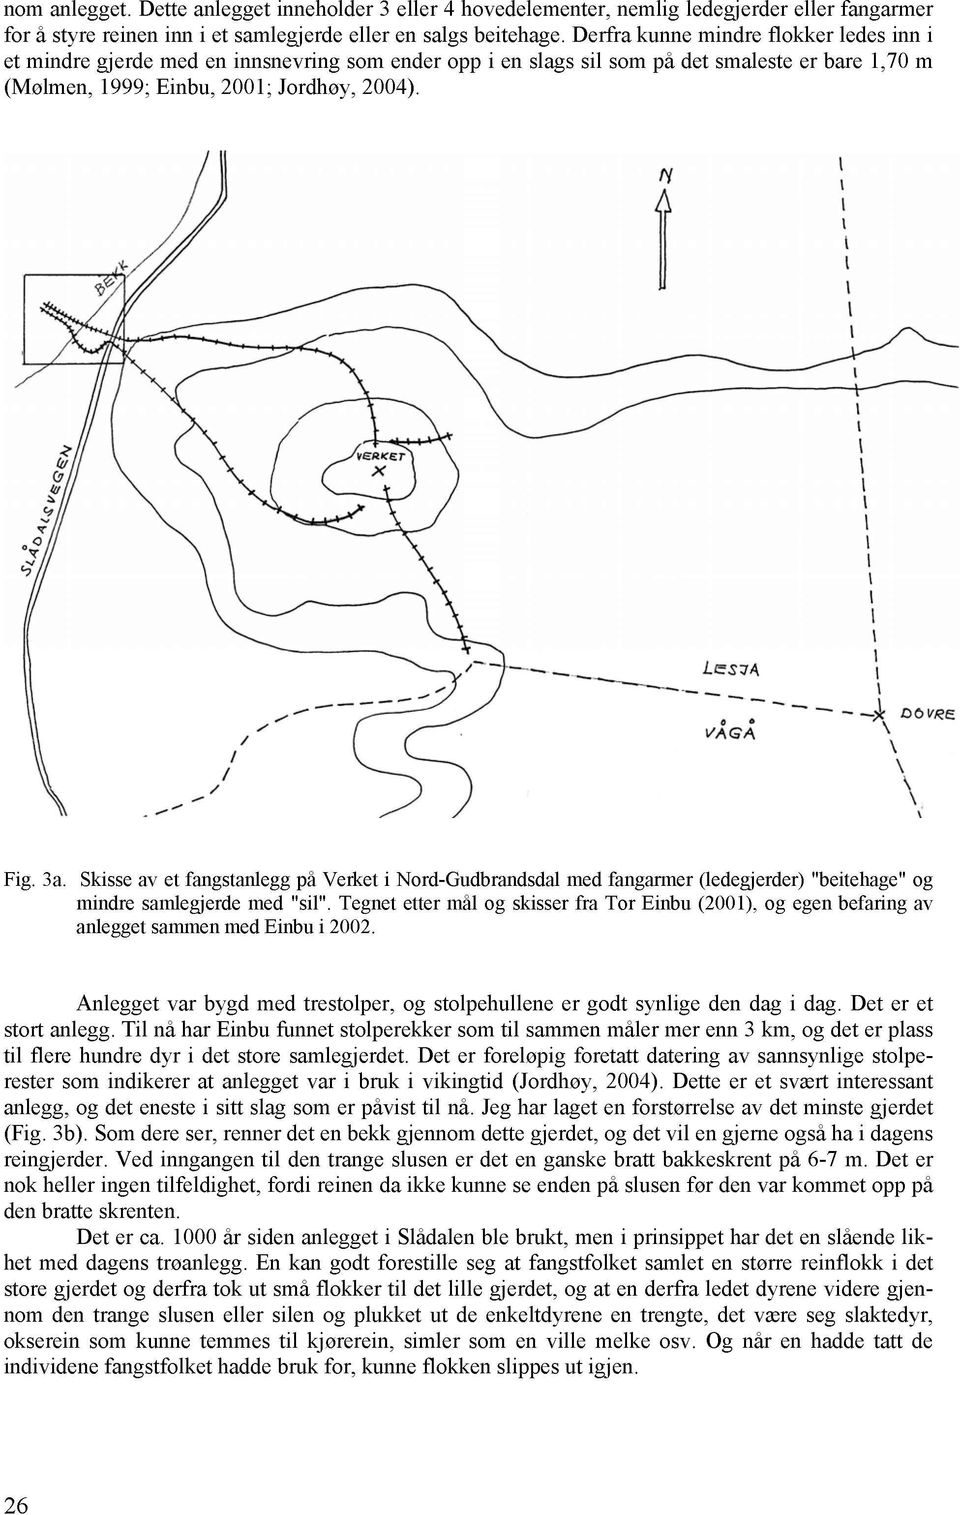 Skisse av et fangstanlegg på Verket i Nord-Gudbrandsdal med fangarmer (ledegjerder) "beitehage" og mindre samlegjerde med "sil".